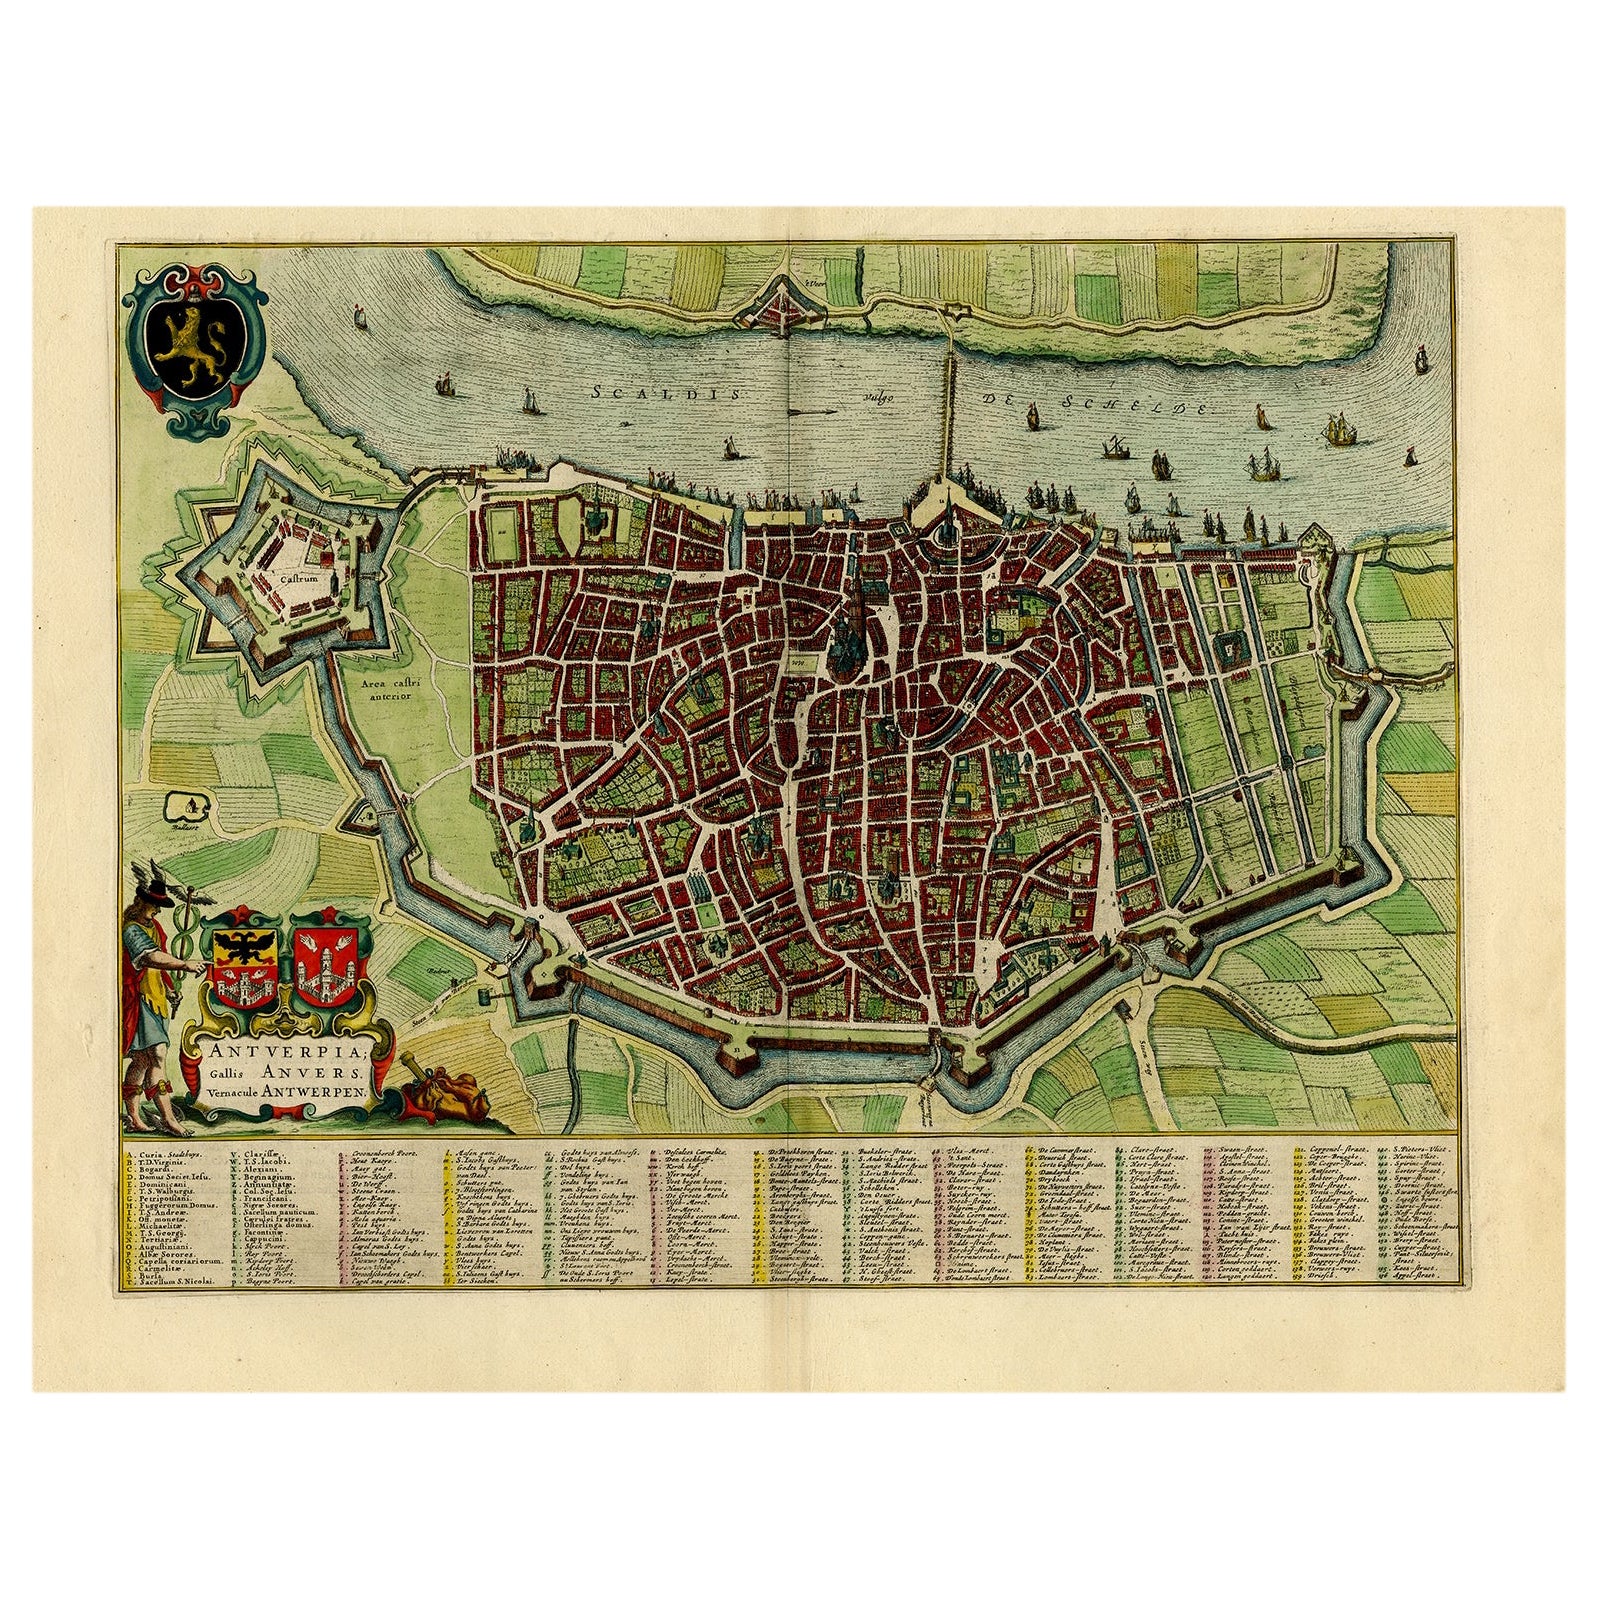 Beautiful Original Antique Map of Antwerp, Belgium by Mapmaker Blaeu, ca.1652